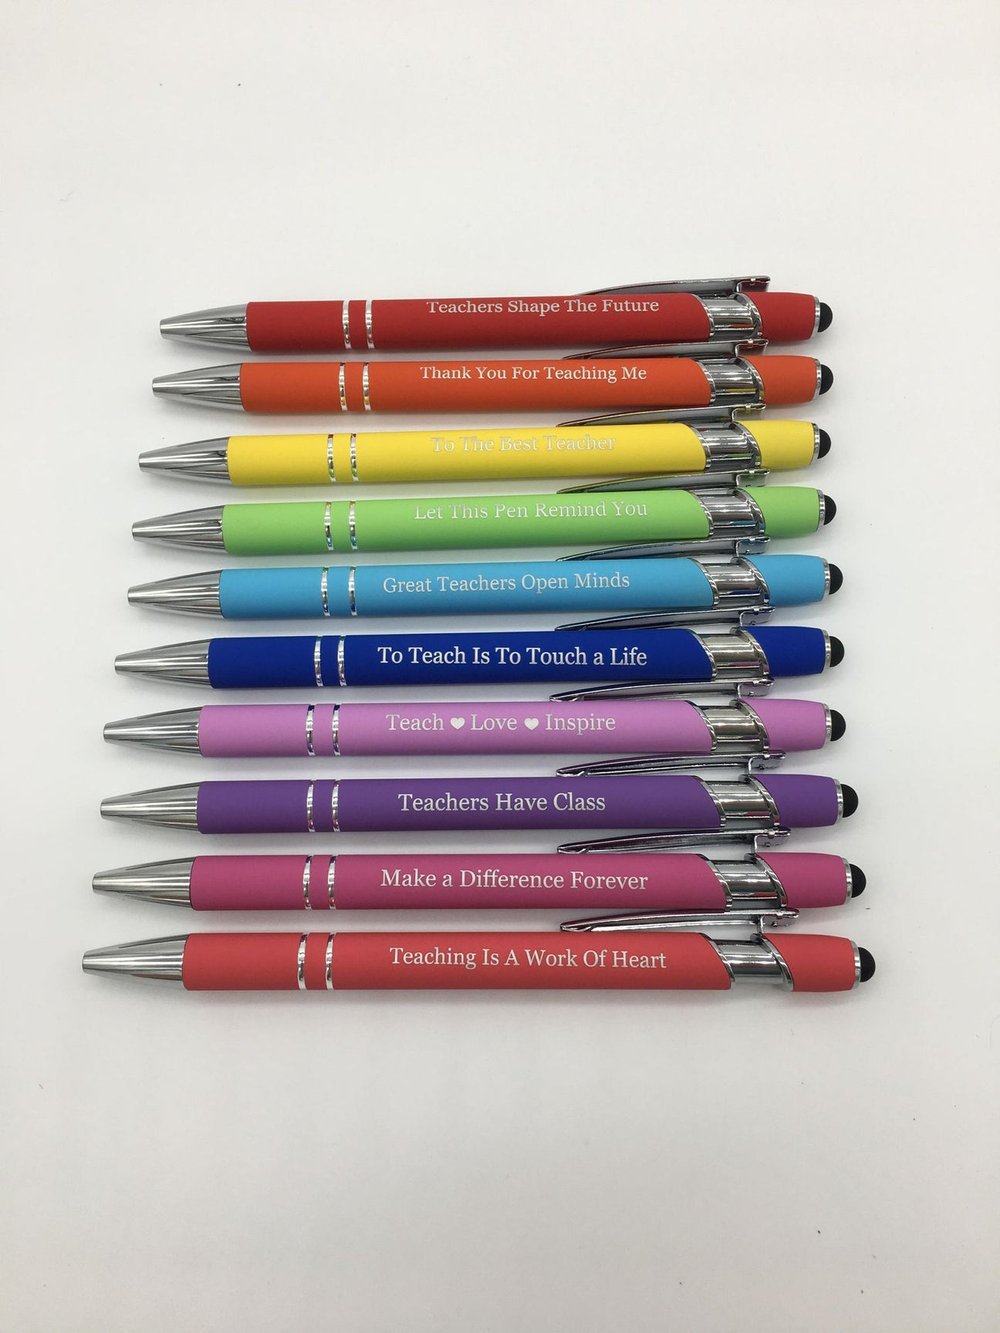 World's Best Teacher Pens